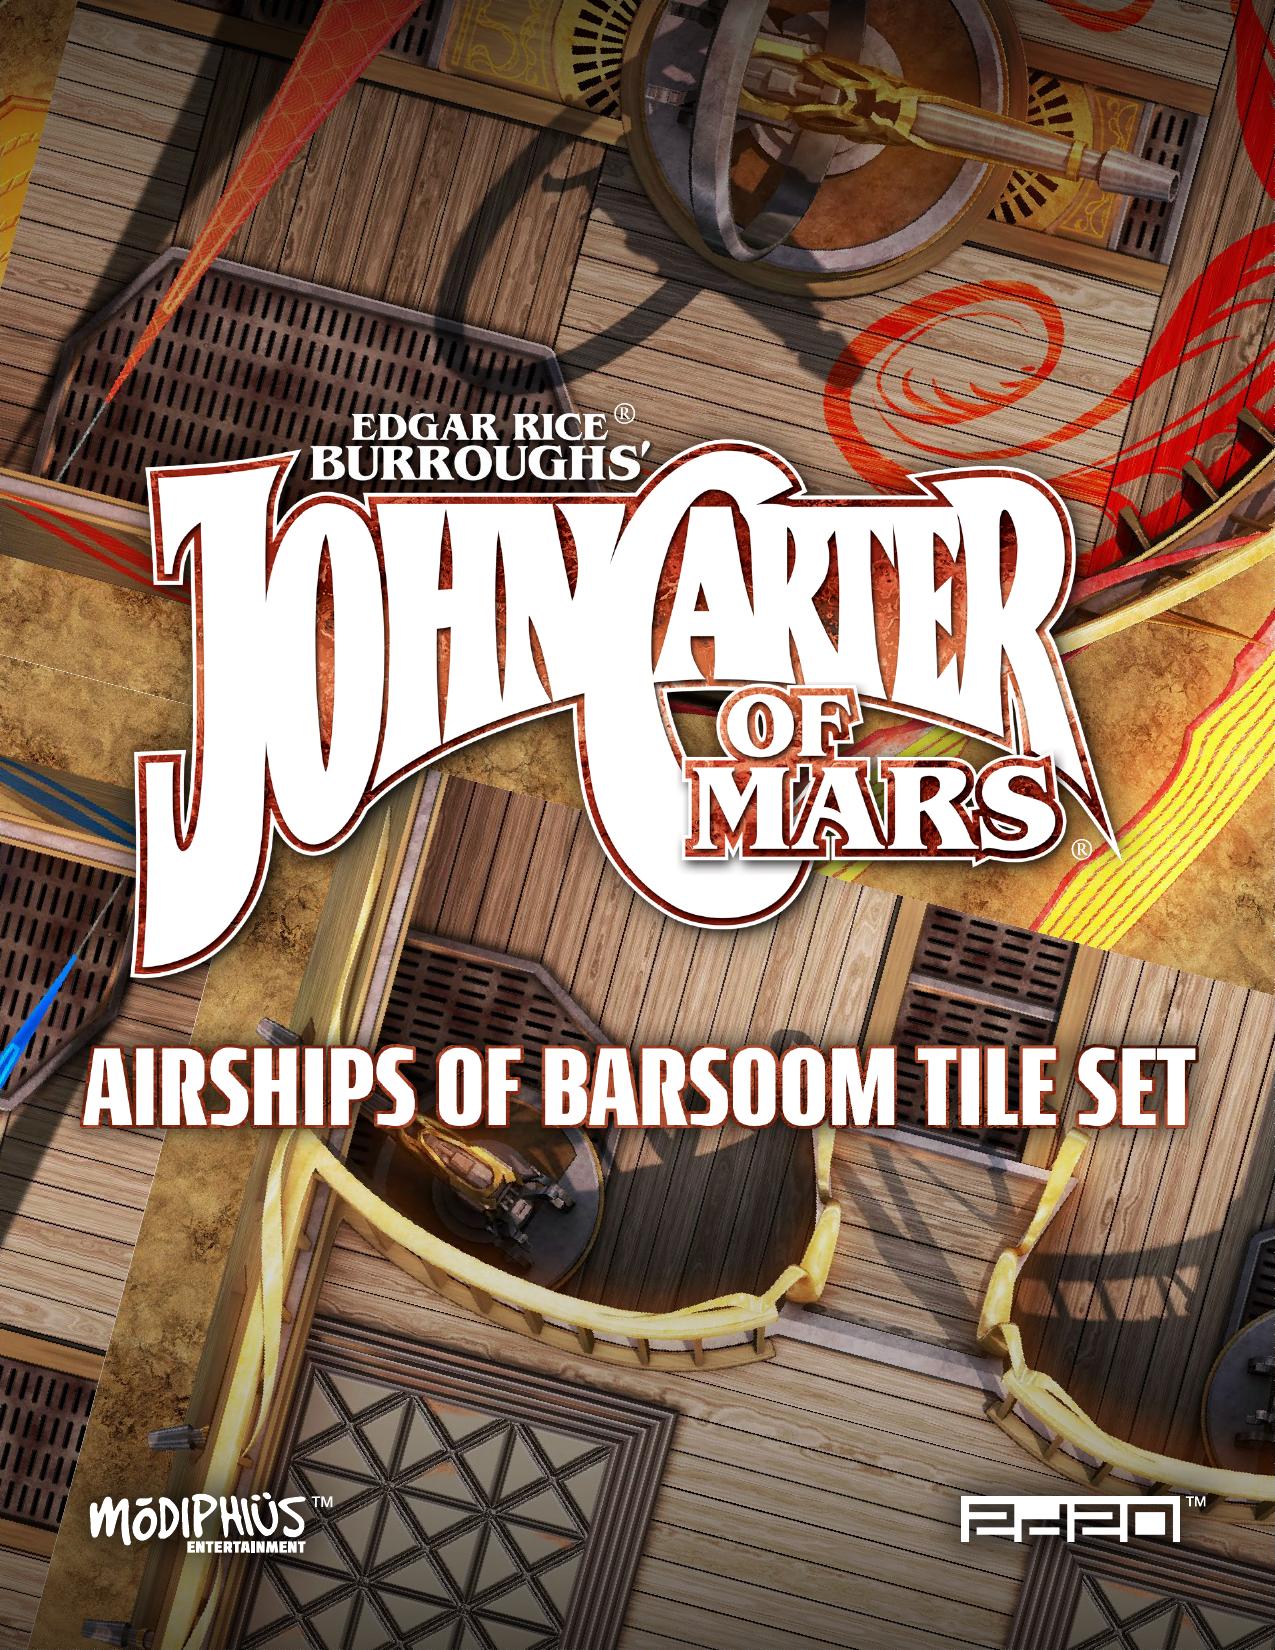 John Carter of Mars Airships of Barsoom Tile Set Ships Cover